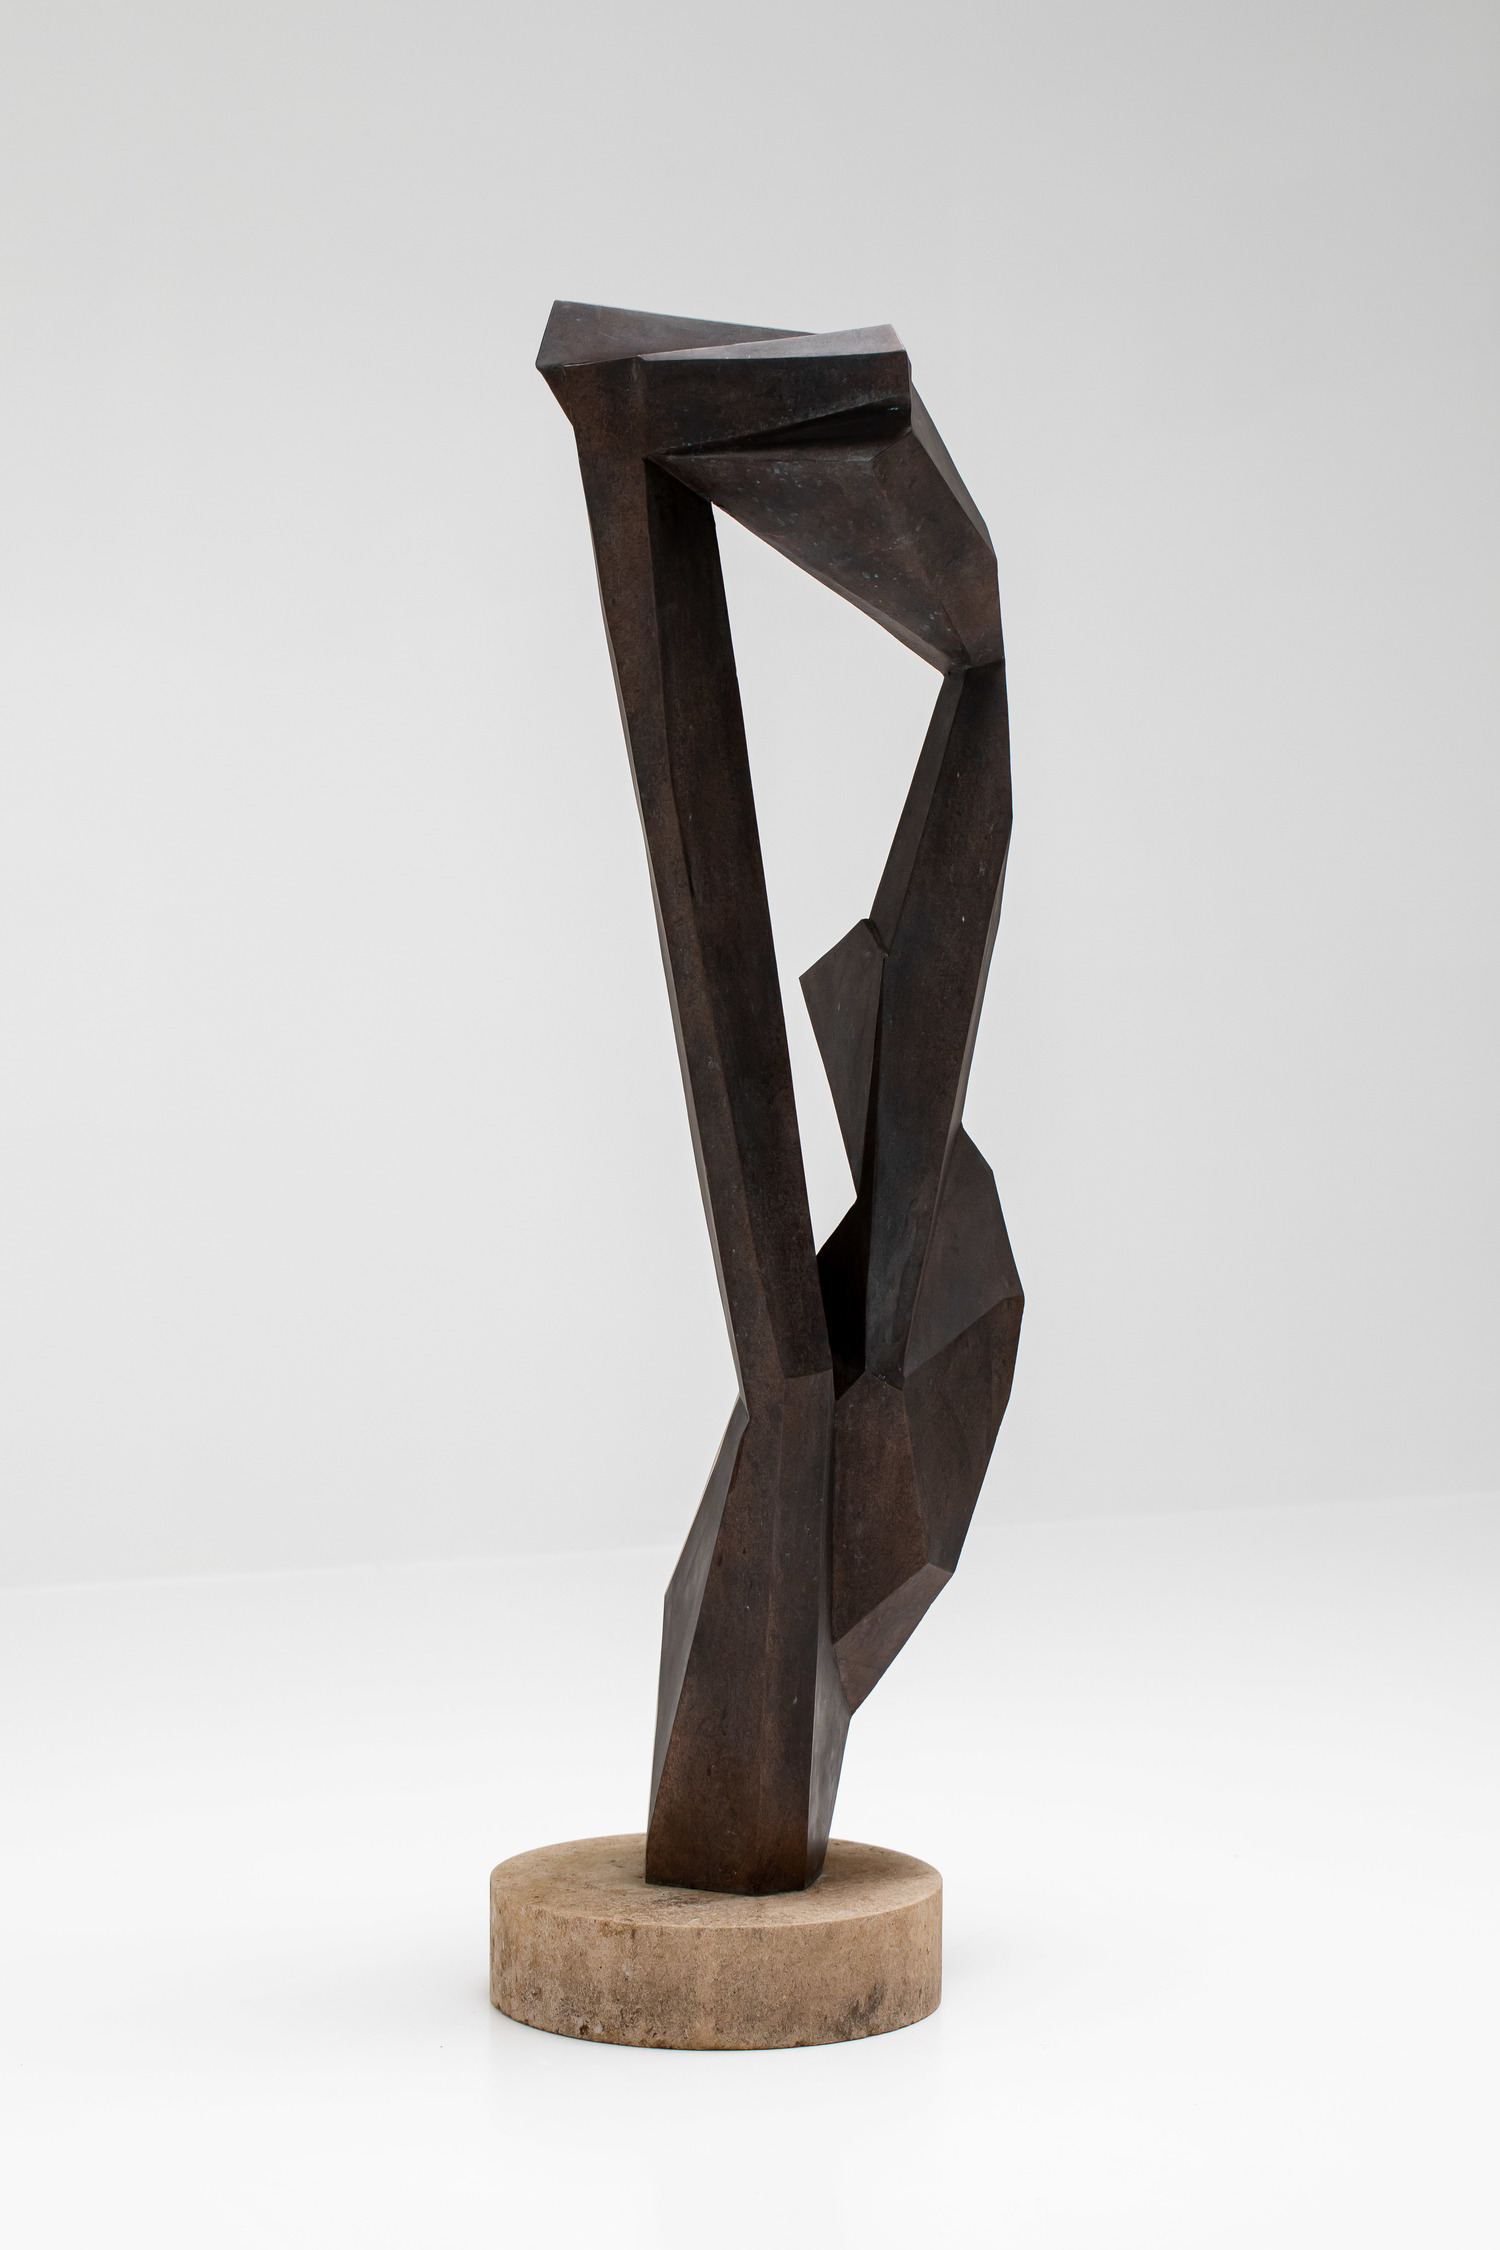 Steffen Christensen Sculpture